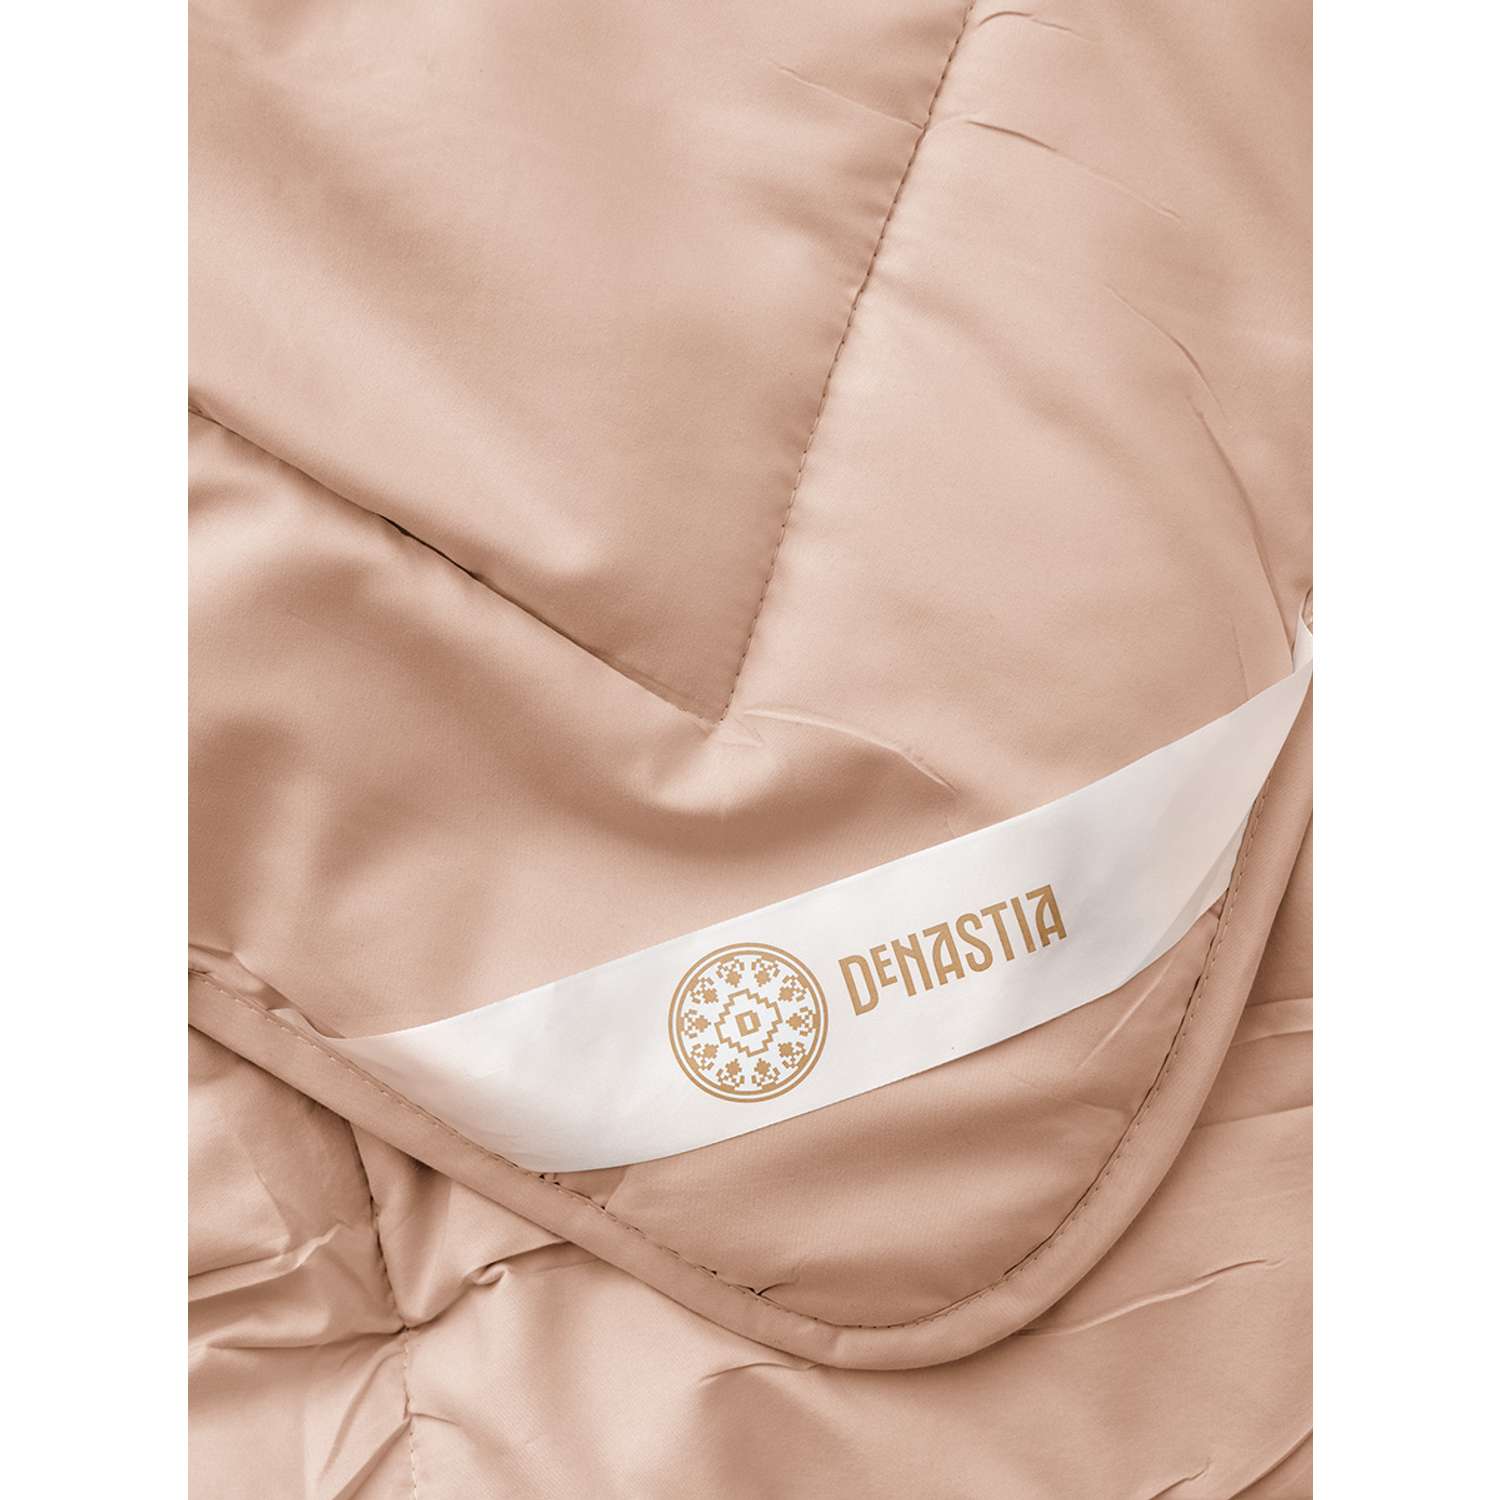 Одеяло/покрывало DeNASTIA 200x220 см розовый R020018 - фото 4